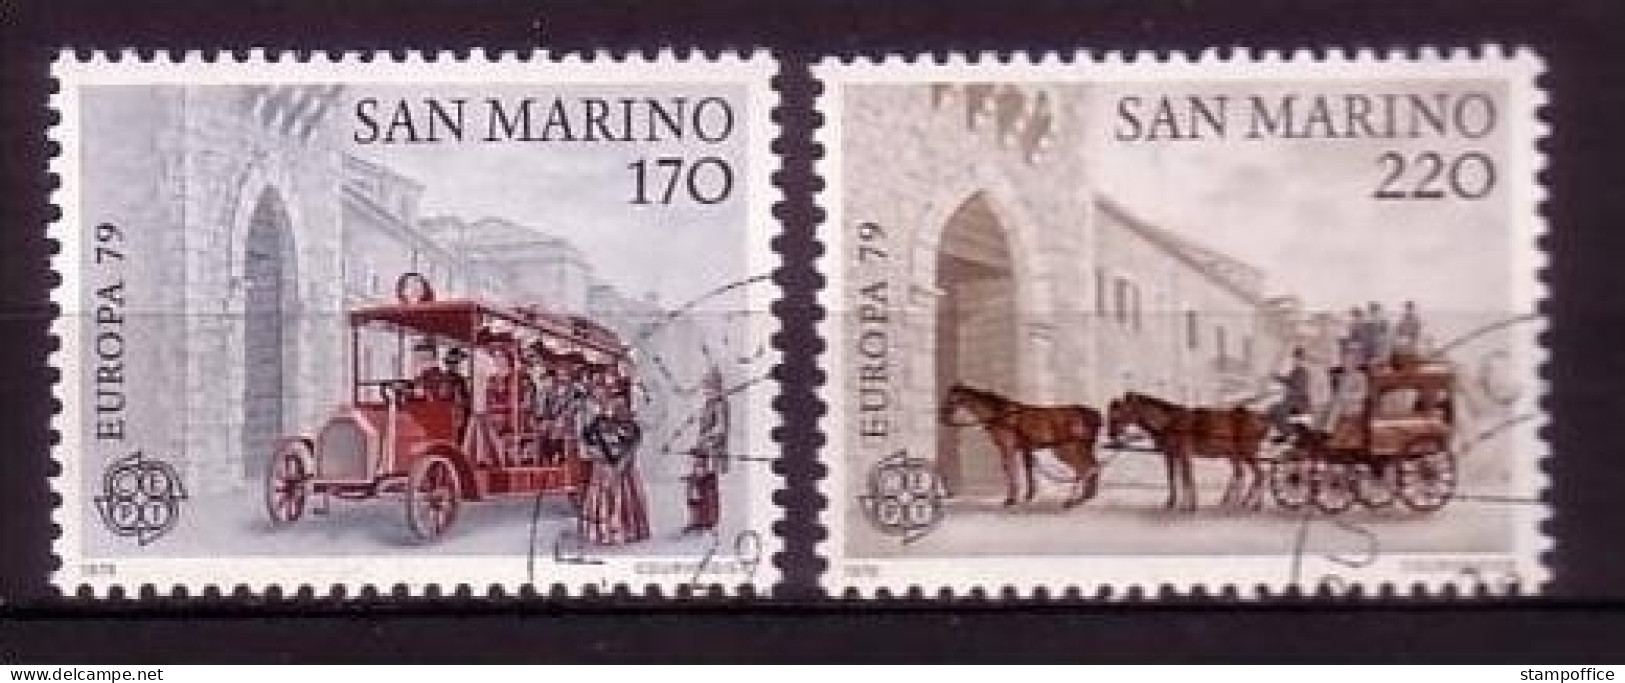 SAN MARINO MI-NR. 1172-1173 GESTEMPELT(USED) EUROPA 1979 POST- Und FERNMELDEWESEN - 1979